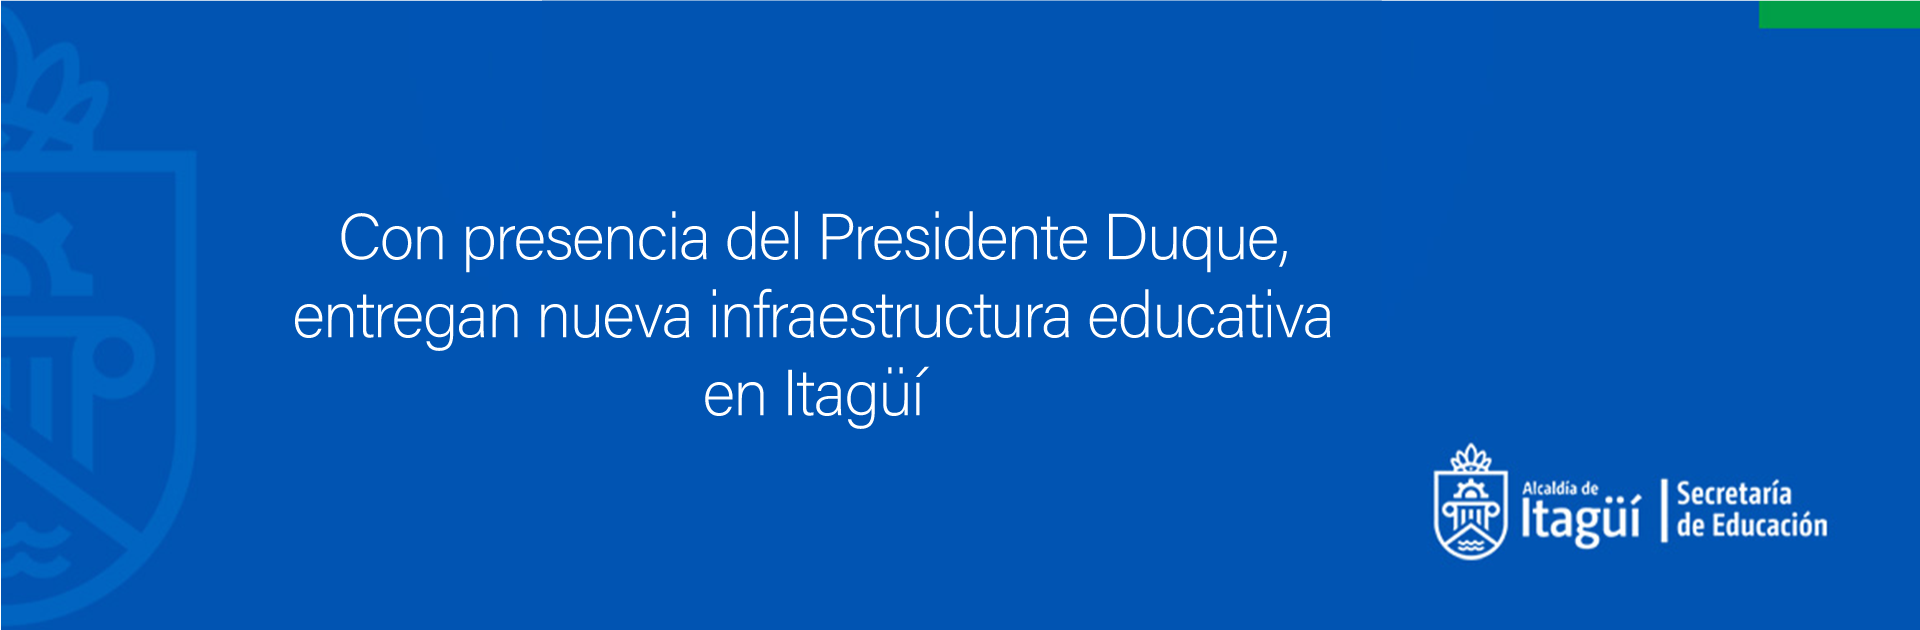 Con presencia del Presidente Duque, entregan nueva infraestructura educativa en Itagüí